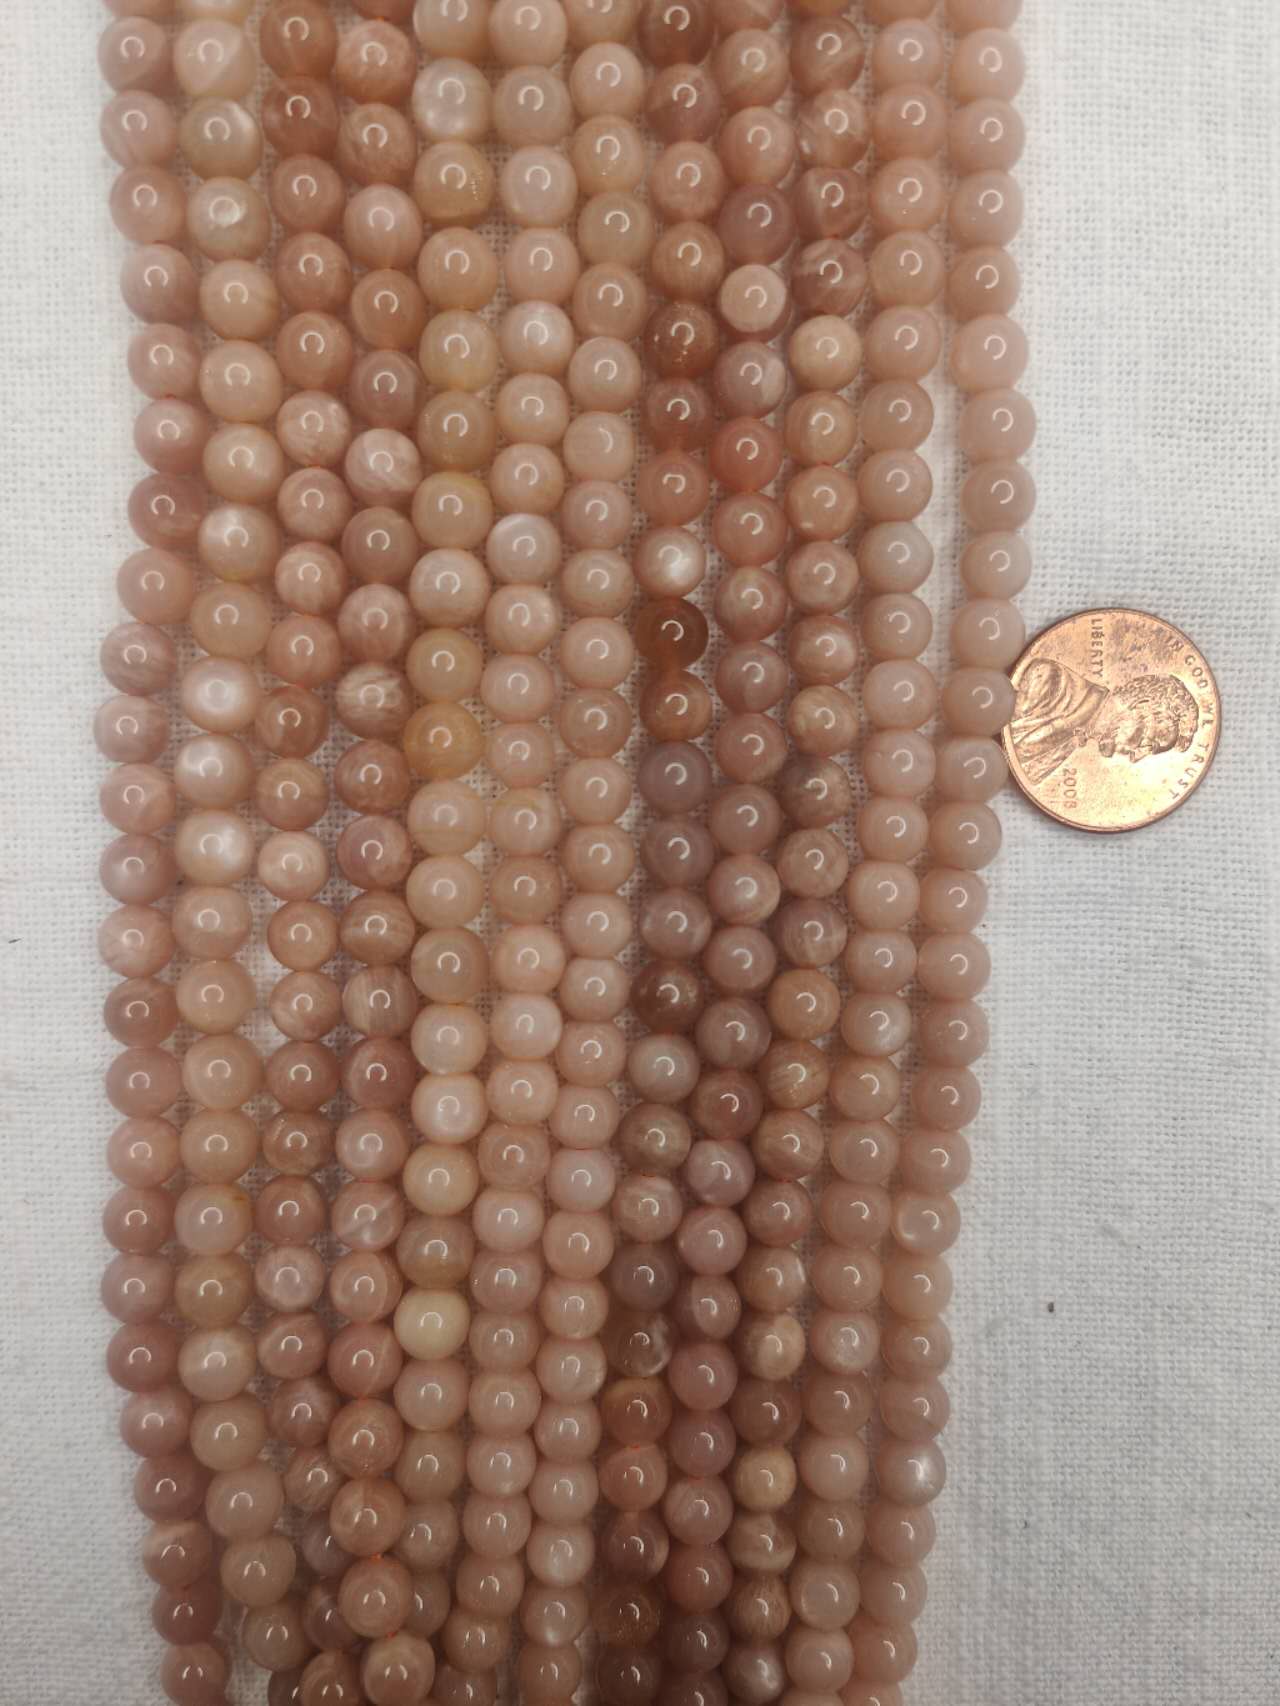 sunstone 6mm round beads 15.5"strand